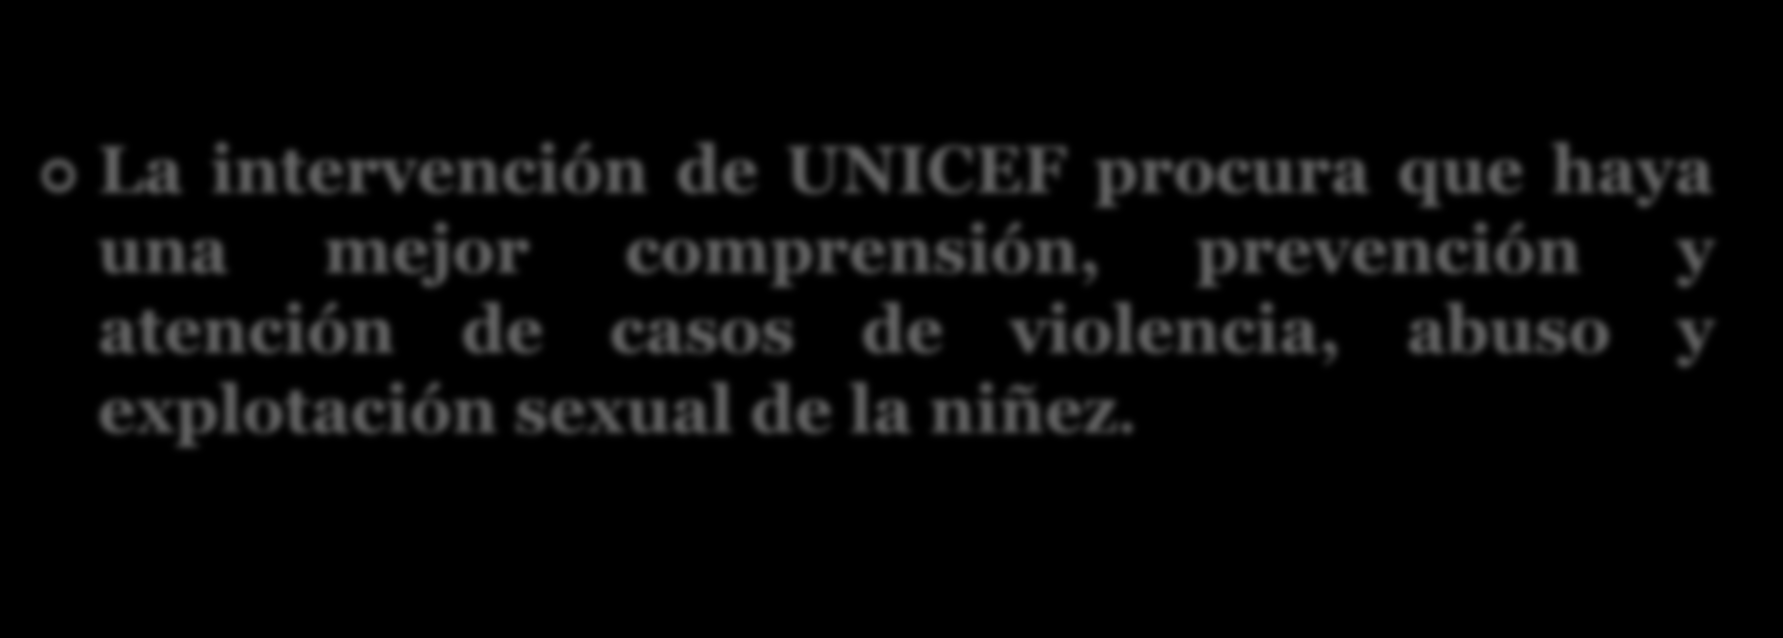 PROTECCIÓN DE LOS DERECHOS DE LA NIÑEZ: La intervención de UNICEF procura que haya una mejor comprensión, prevención y atención de casos